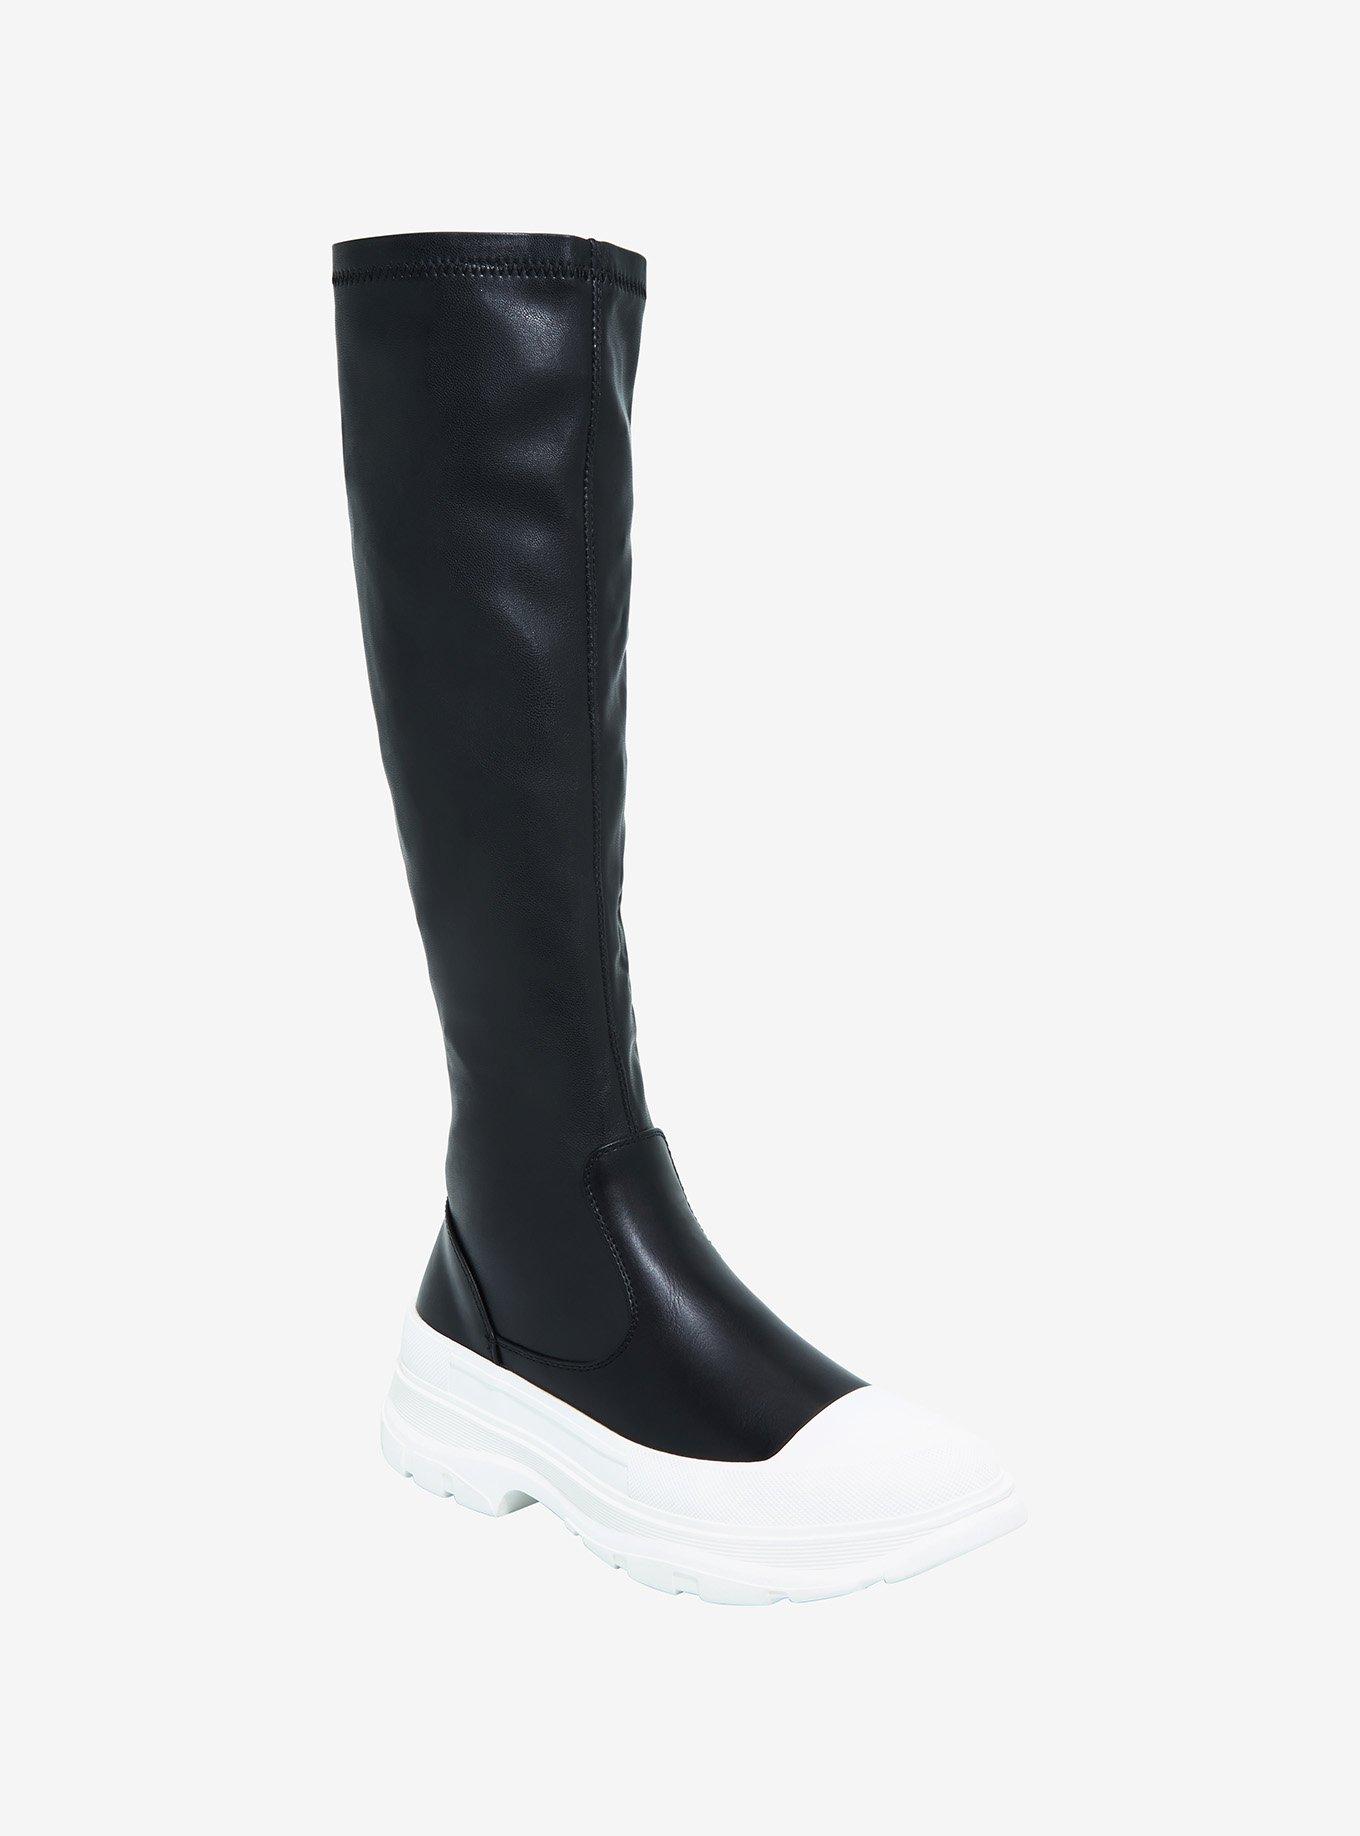 Azalea Wang Black & White Knee-High Stretch Sneakers | Hot Topic